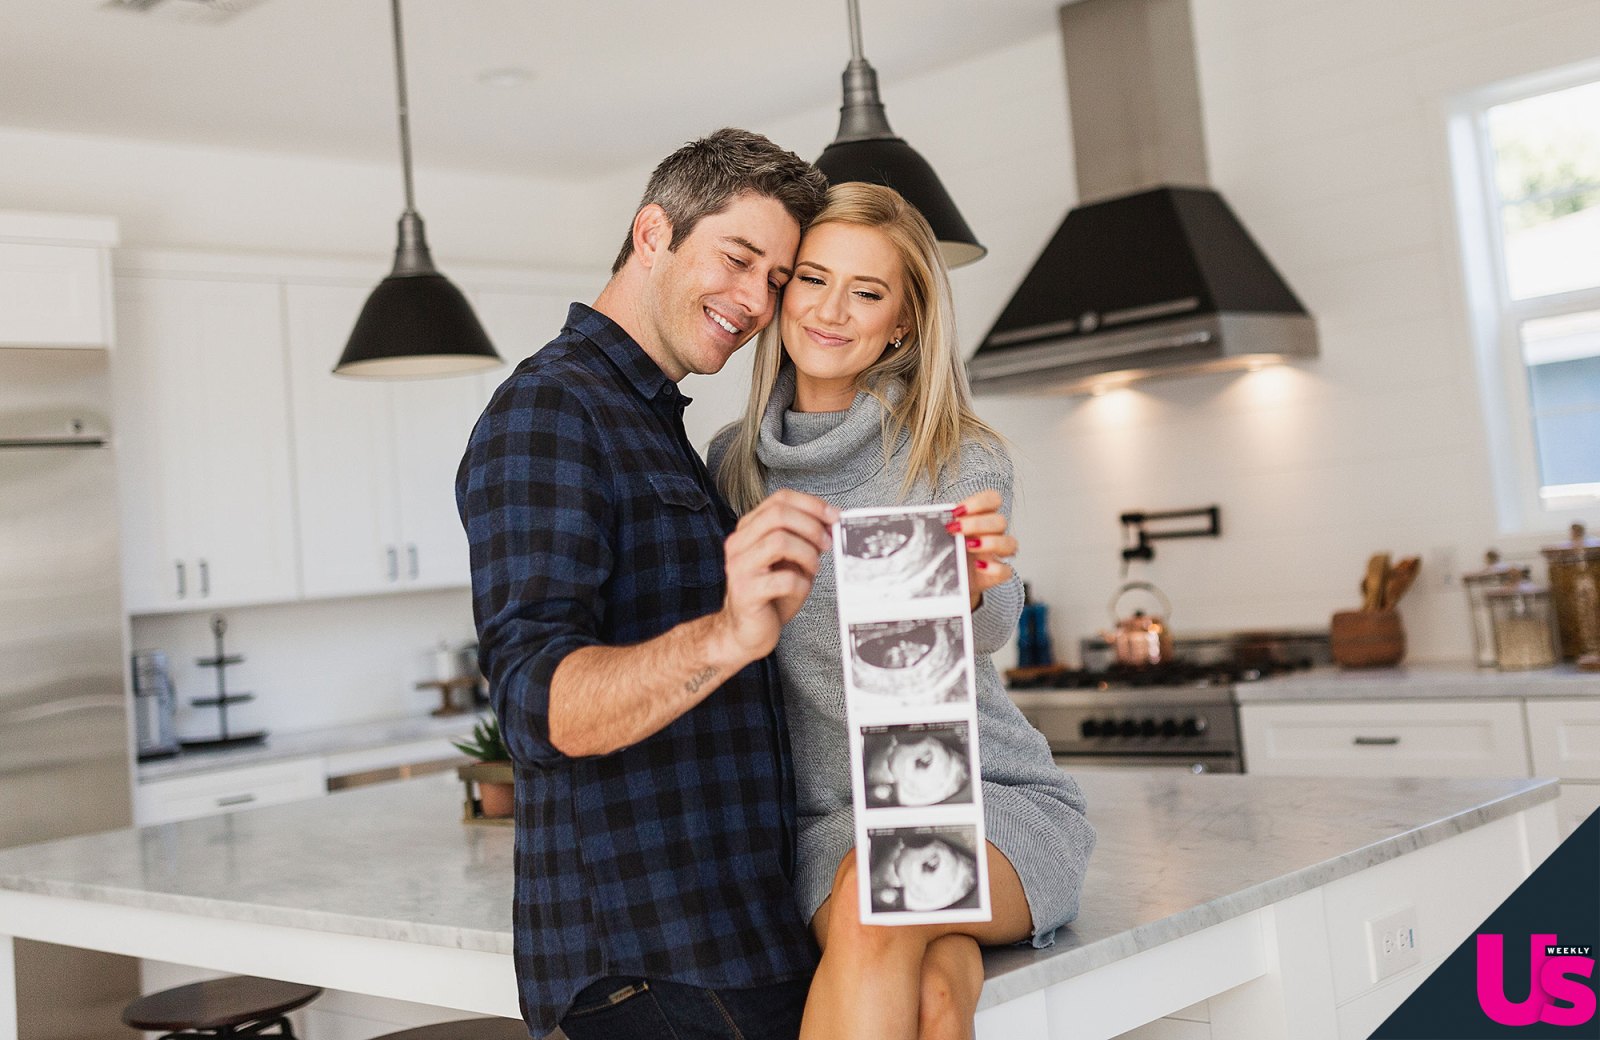 Arie Luyendyk Jr. and Lauren Burnham pregnant